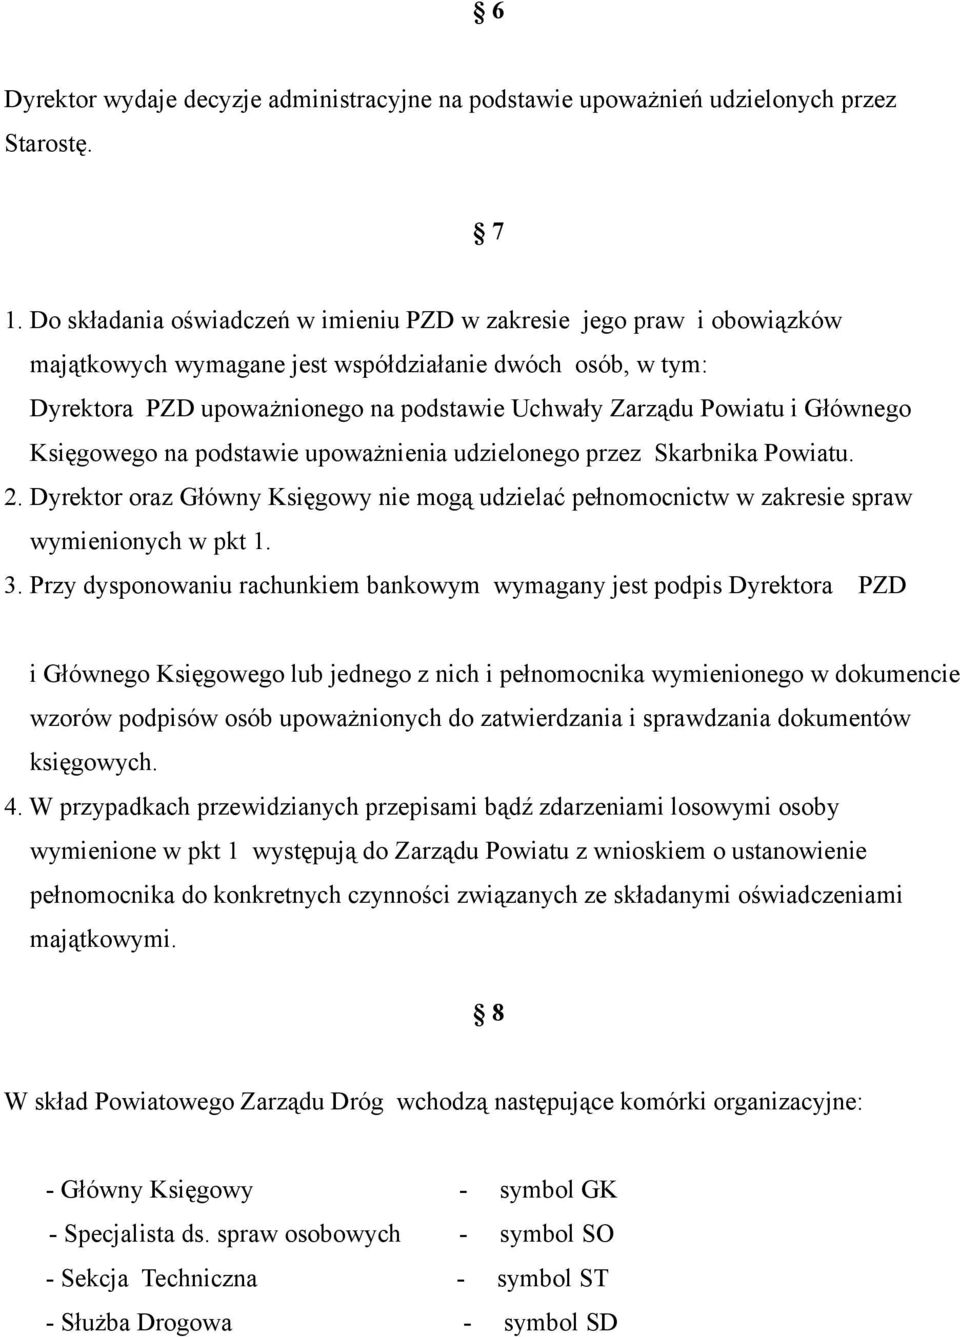 Głównego Księgowego na podstawie upoważnienia udzielonego przez Skarbnika Powiatu. 2. Dyrektor oraz Główny Księgowy nie mogą udzielać pełnomocnictw w zakresie spraw wymienionych w pkt 1. 3.